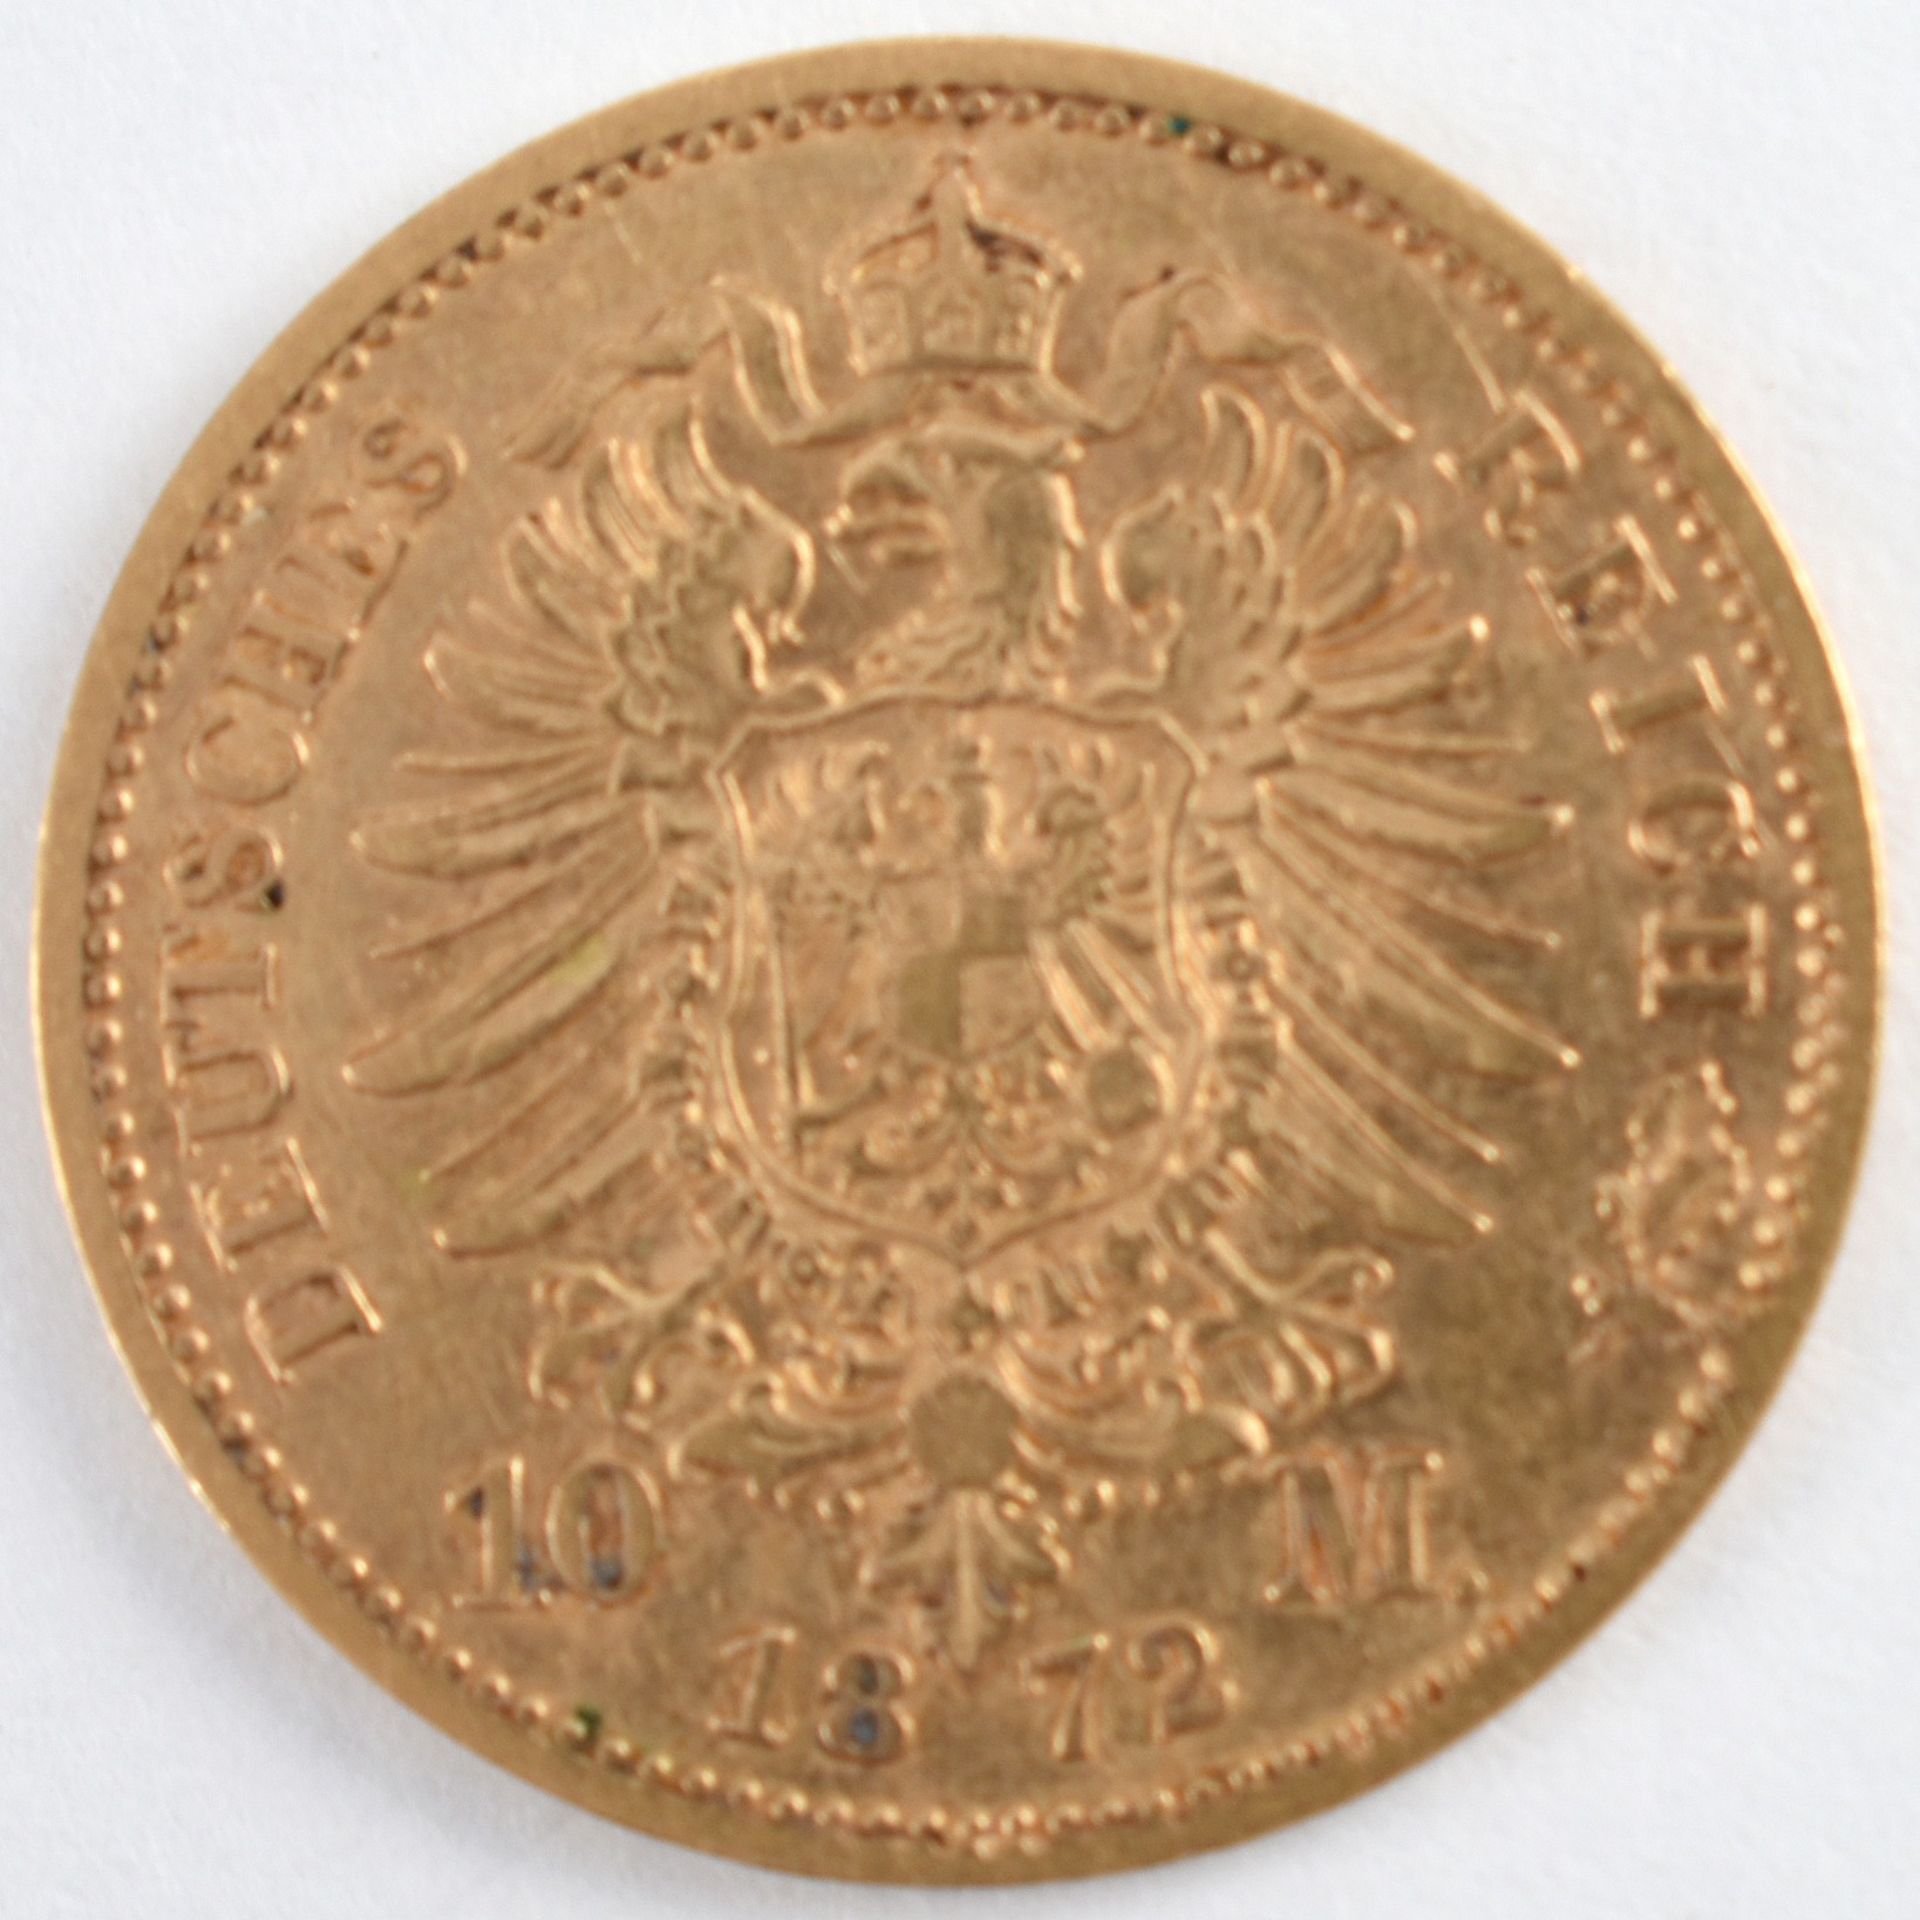 Goldmünze Kaiserreich - Preußen 1872 10 Mark in Gold, 900/1000, 3,98 g, D ca. 19,5 mm, av. Wilhelm - Bild 3 aus 3